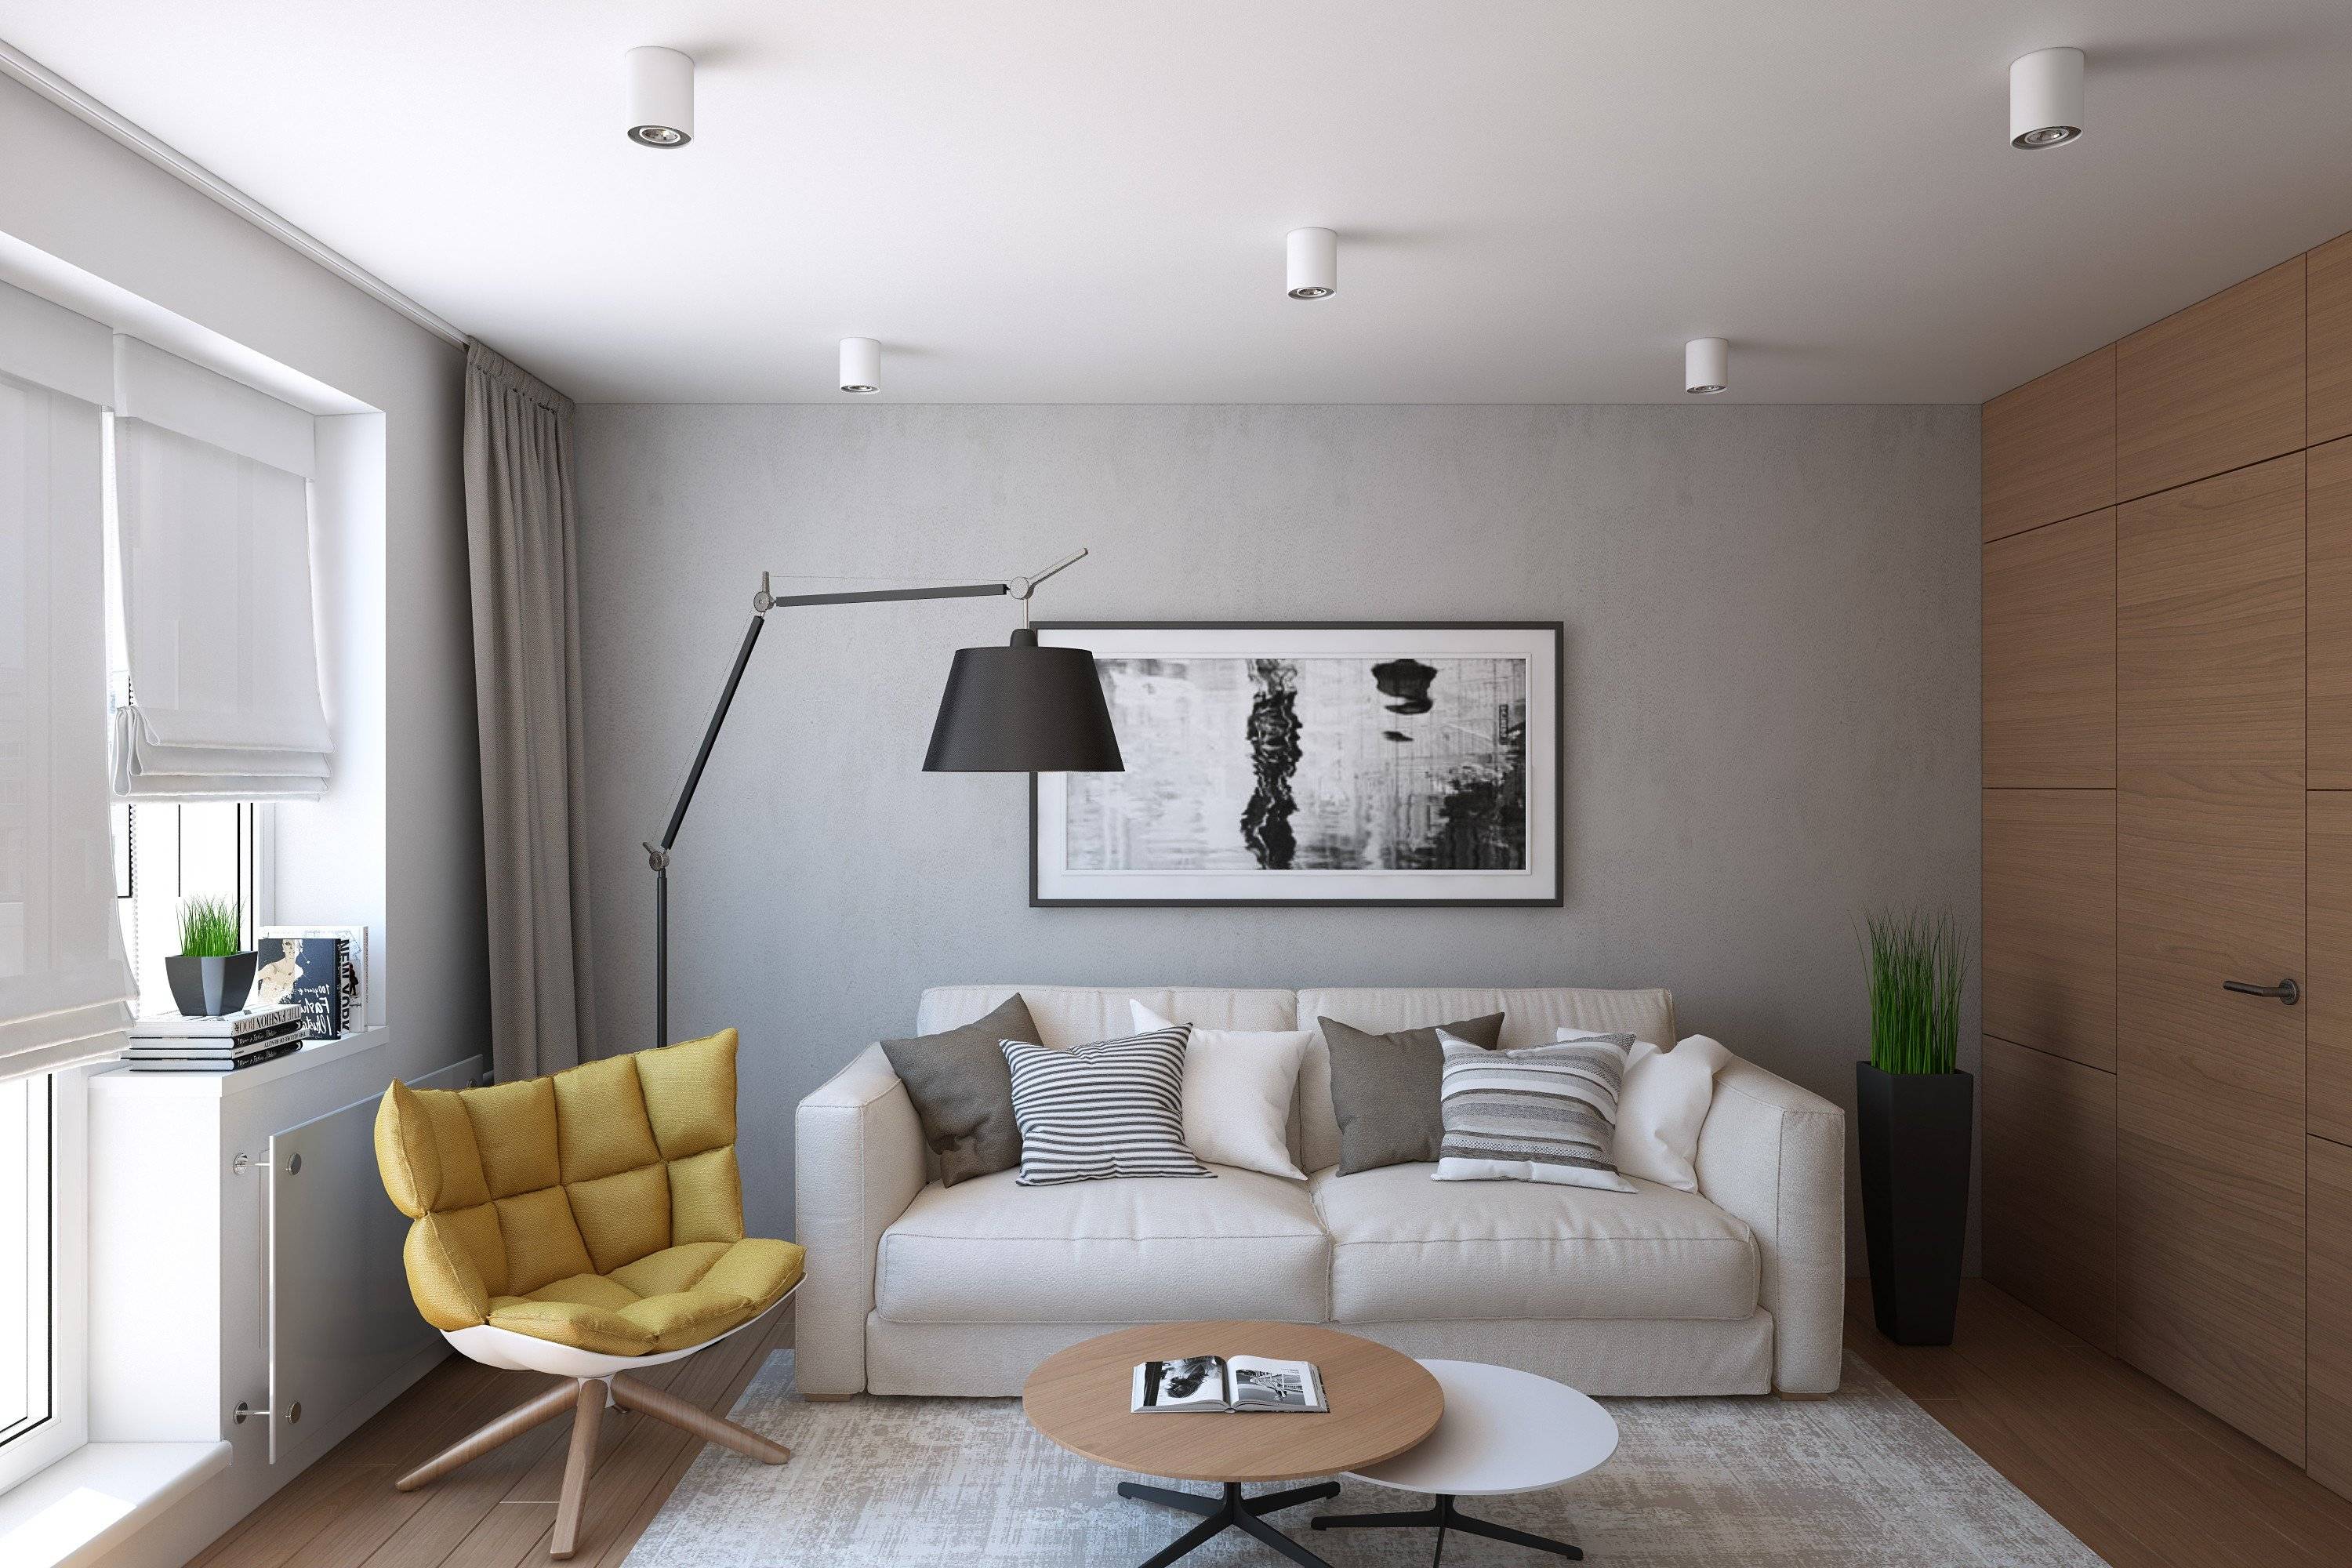 Гостиная в квартире: простые интерьерные решения и модные варианты оформления гостиной